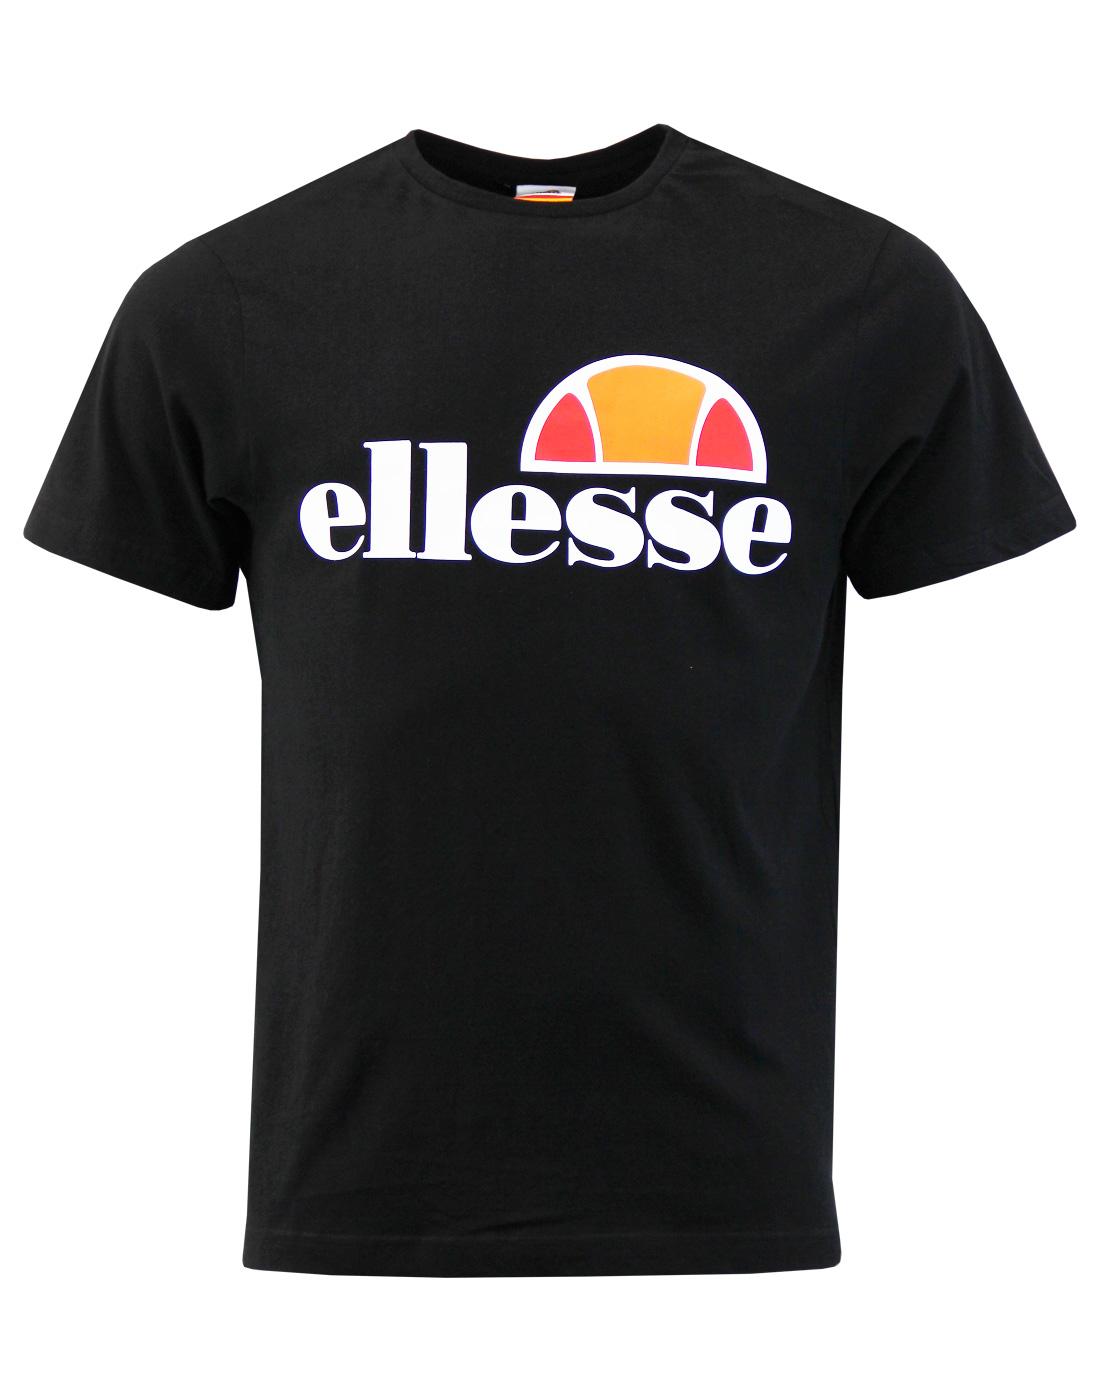 Prado ELLESSE Mens Retro 1980s Logo T-shirt (A)